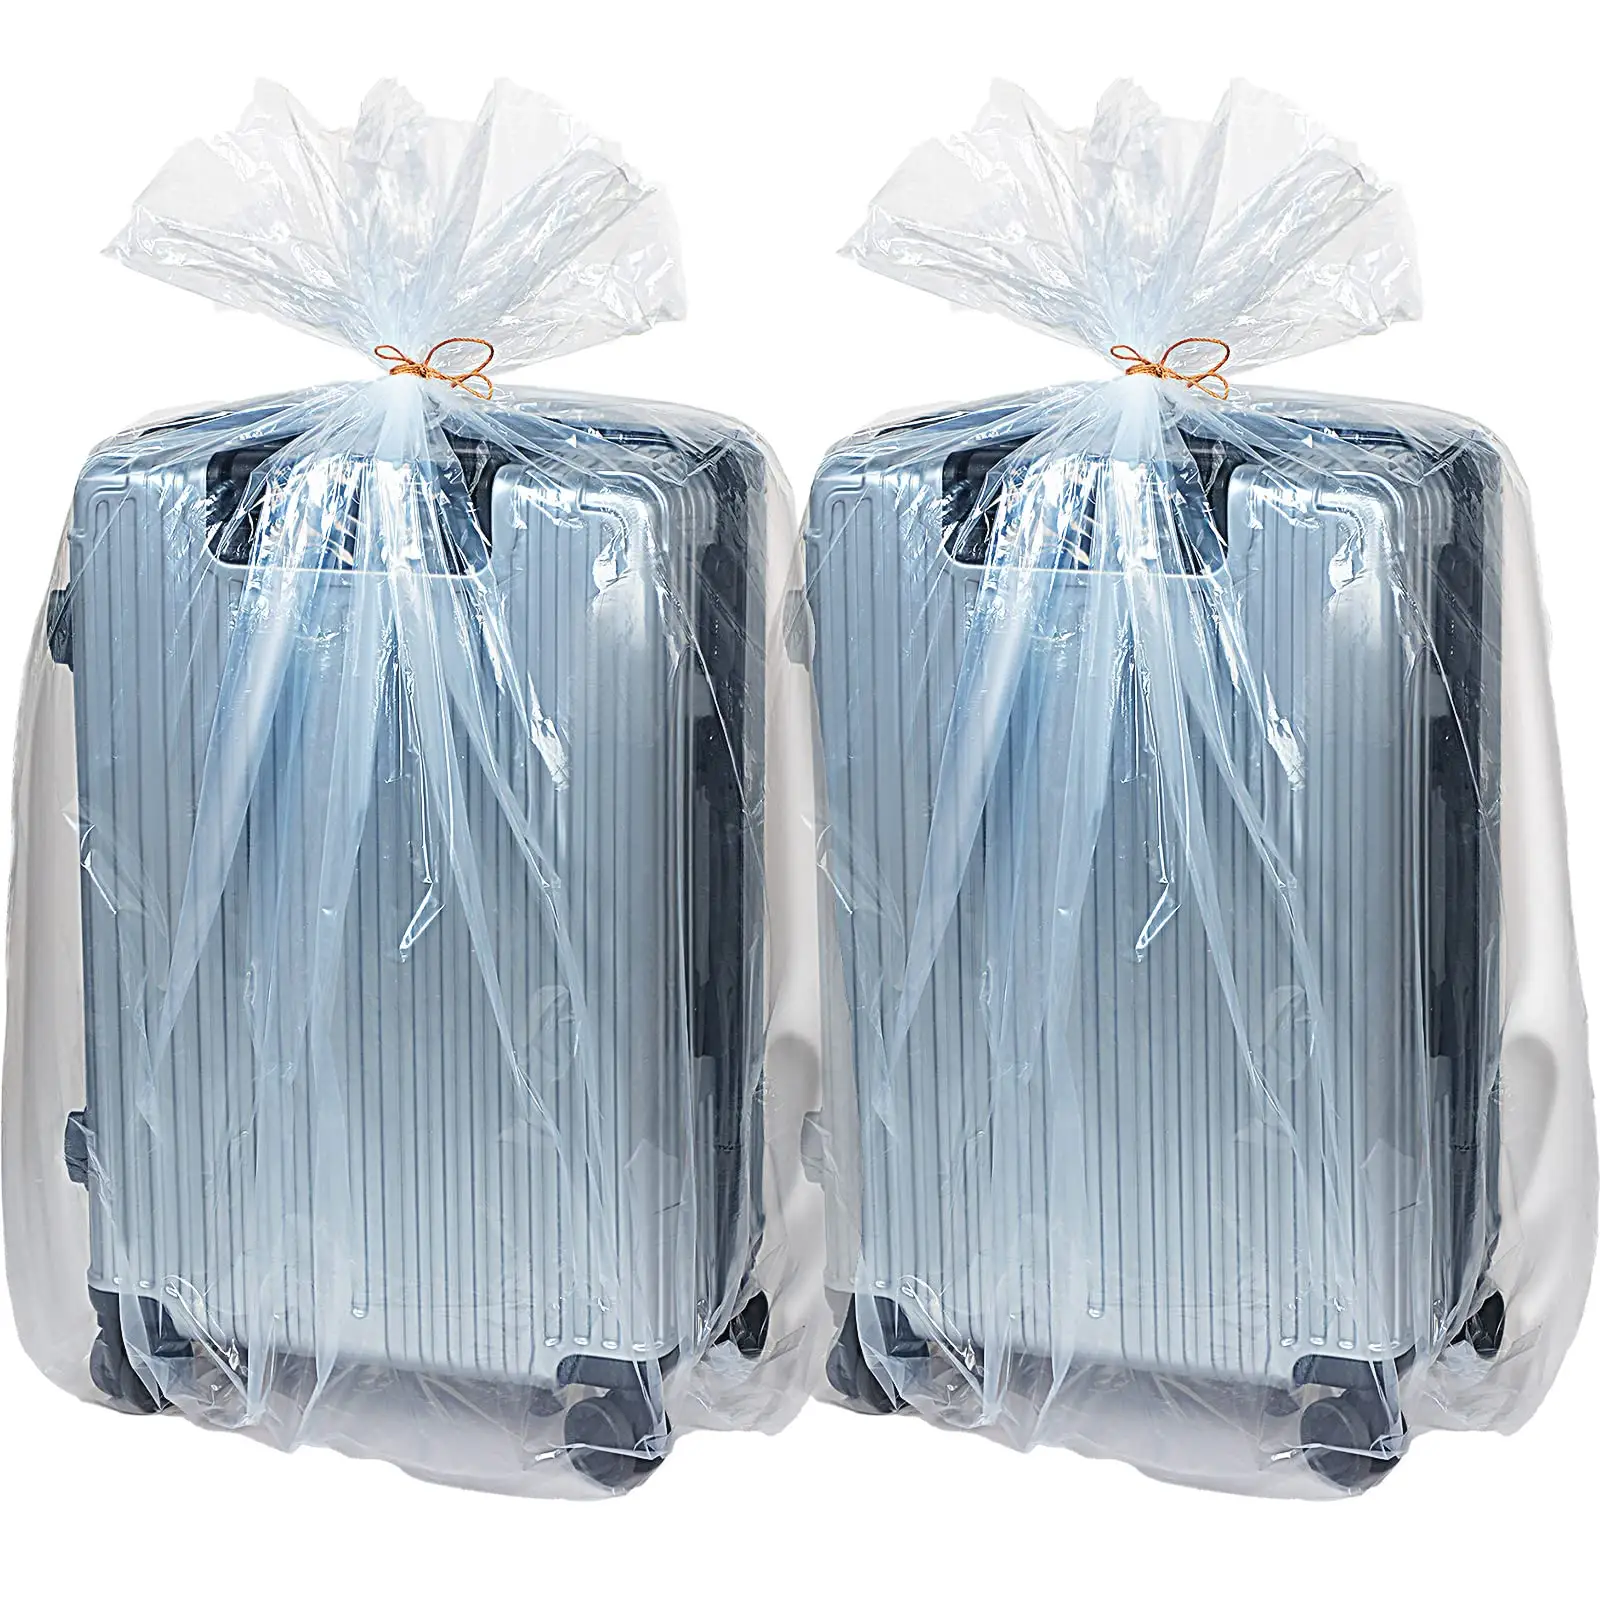 クリアジャイアント収納バッグジャンボプラスチックムービングバッグフラット大型プラスチックPEバッグ衣類梱包荷物スーツケース